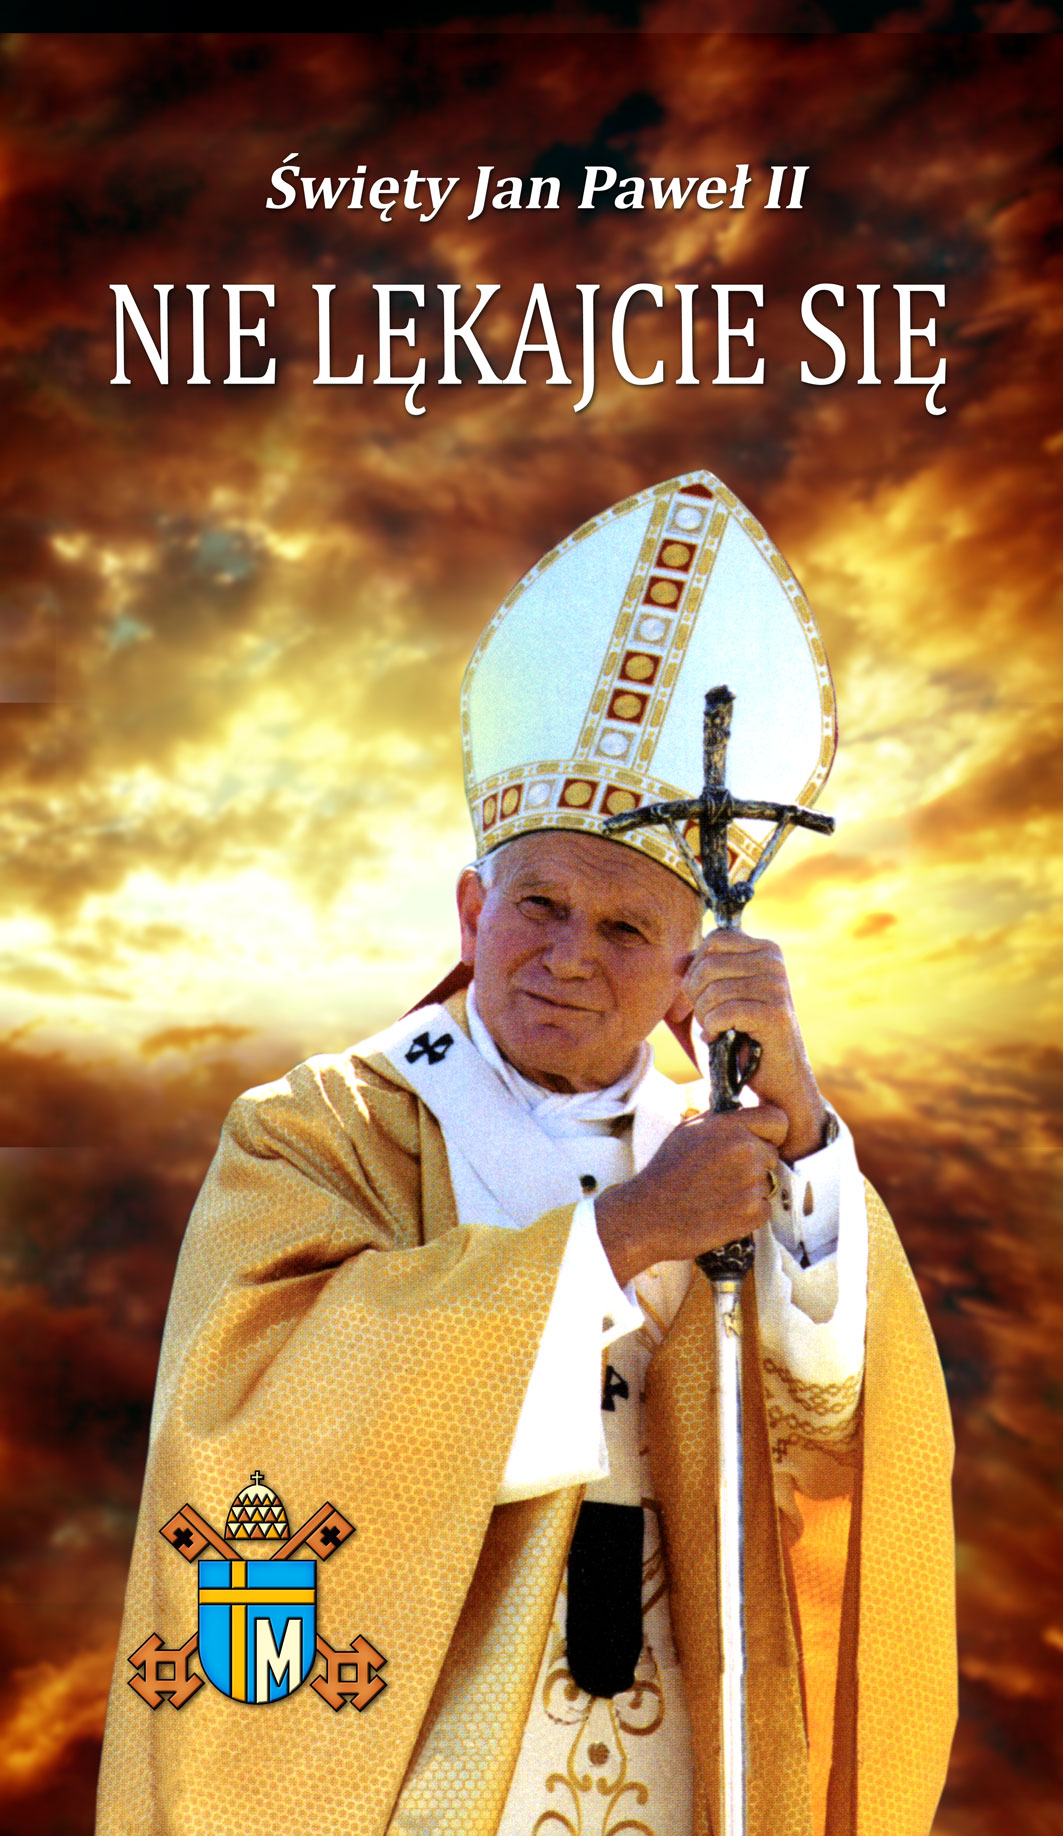 Święty Jan Paweł II - Baner religijny - 08 - 110x190 cm